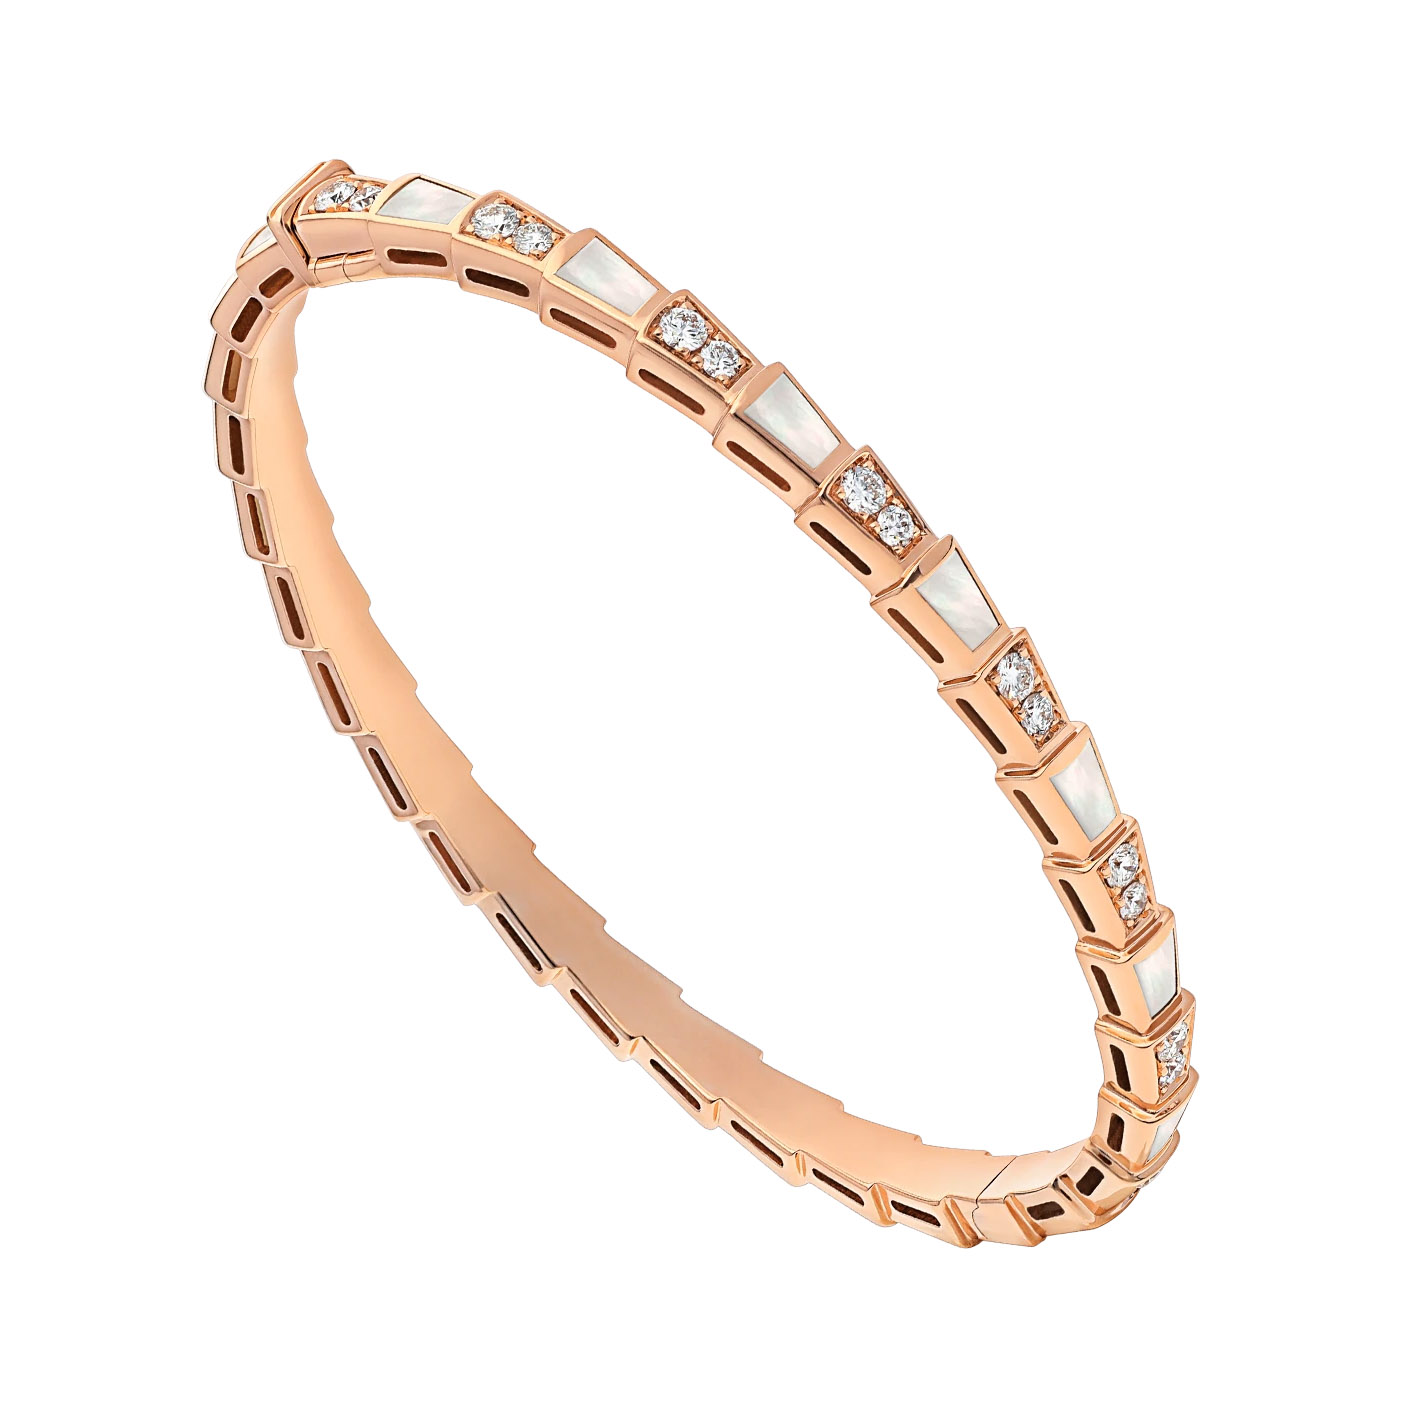 Atacado OEM / ODM joias design personalizado pulseira de ouro rosa 18K com elementos de madrepérola e pavé de diamantes fábrica de joias OEM